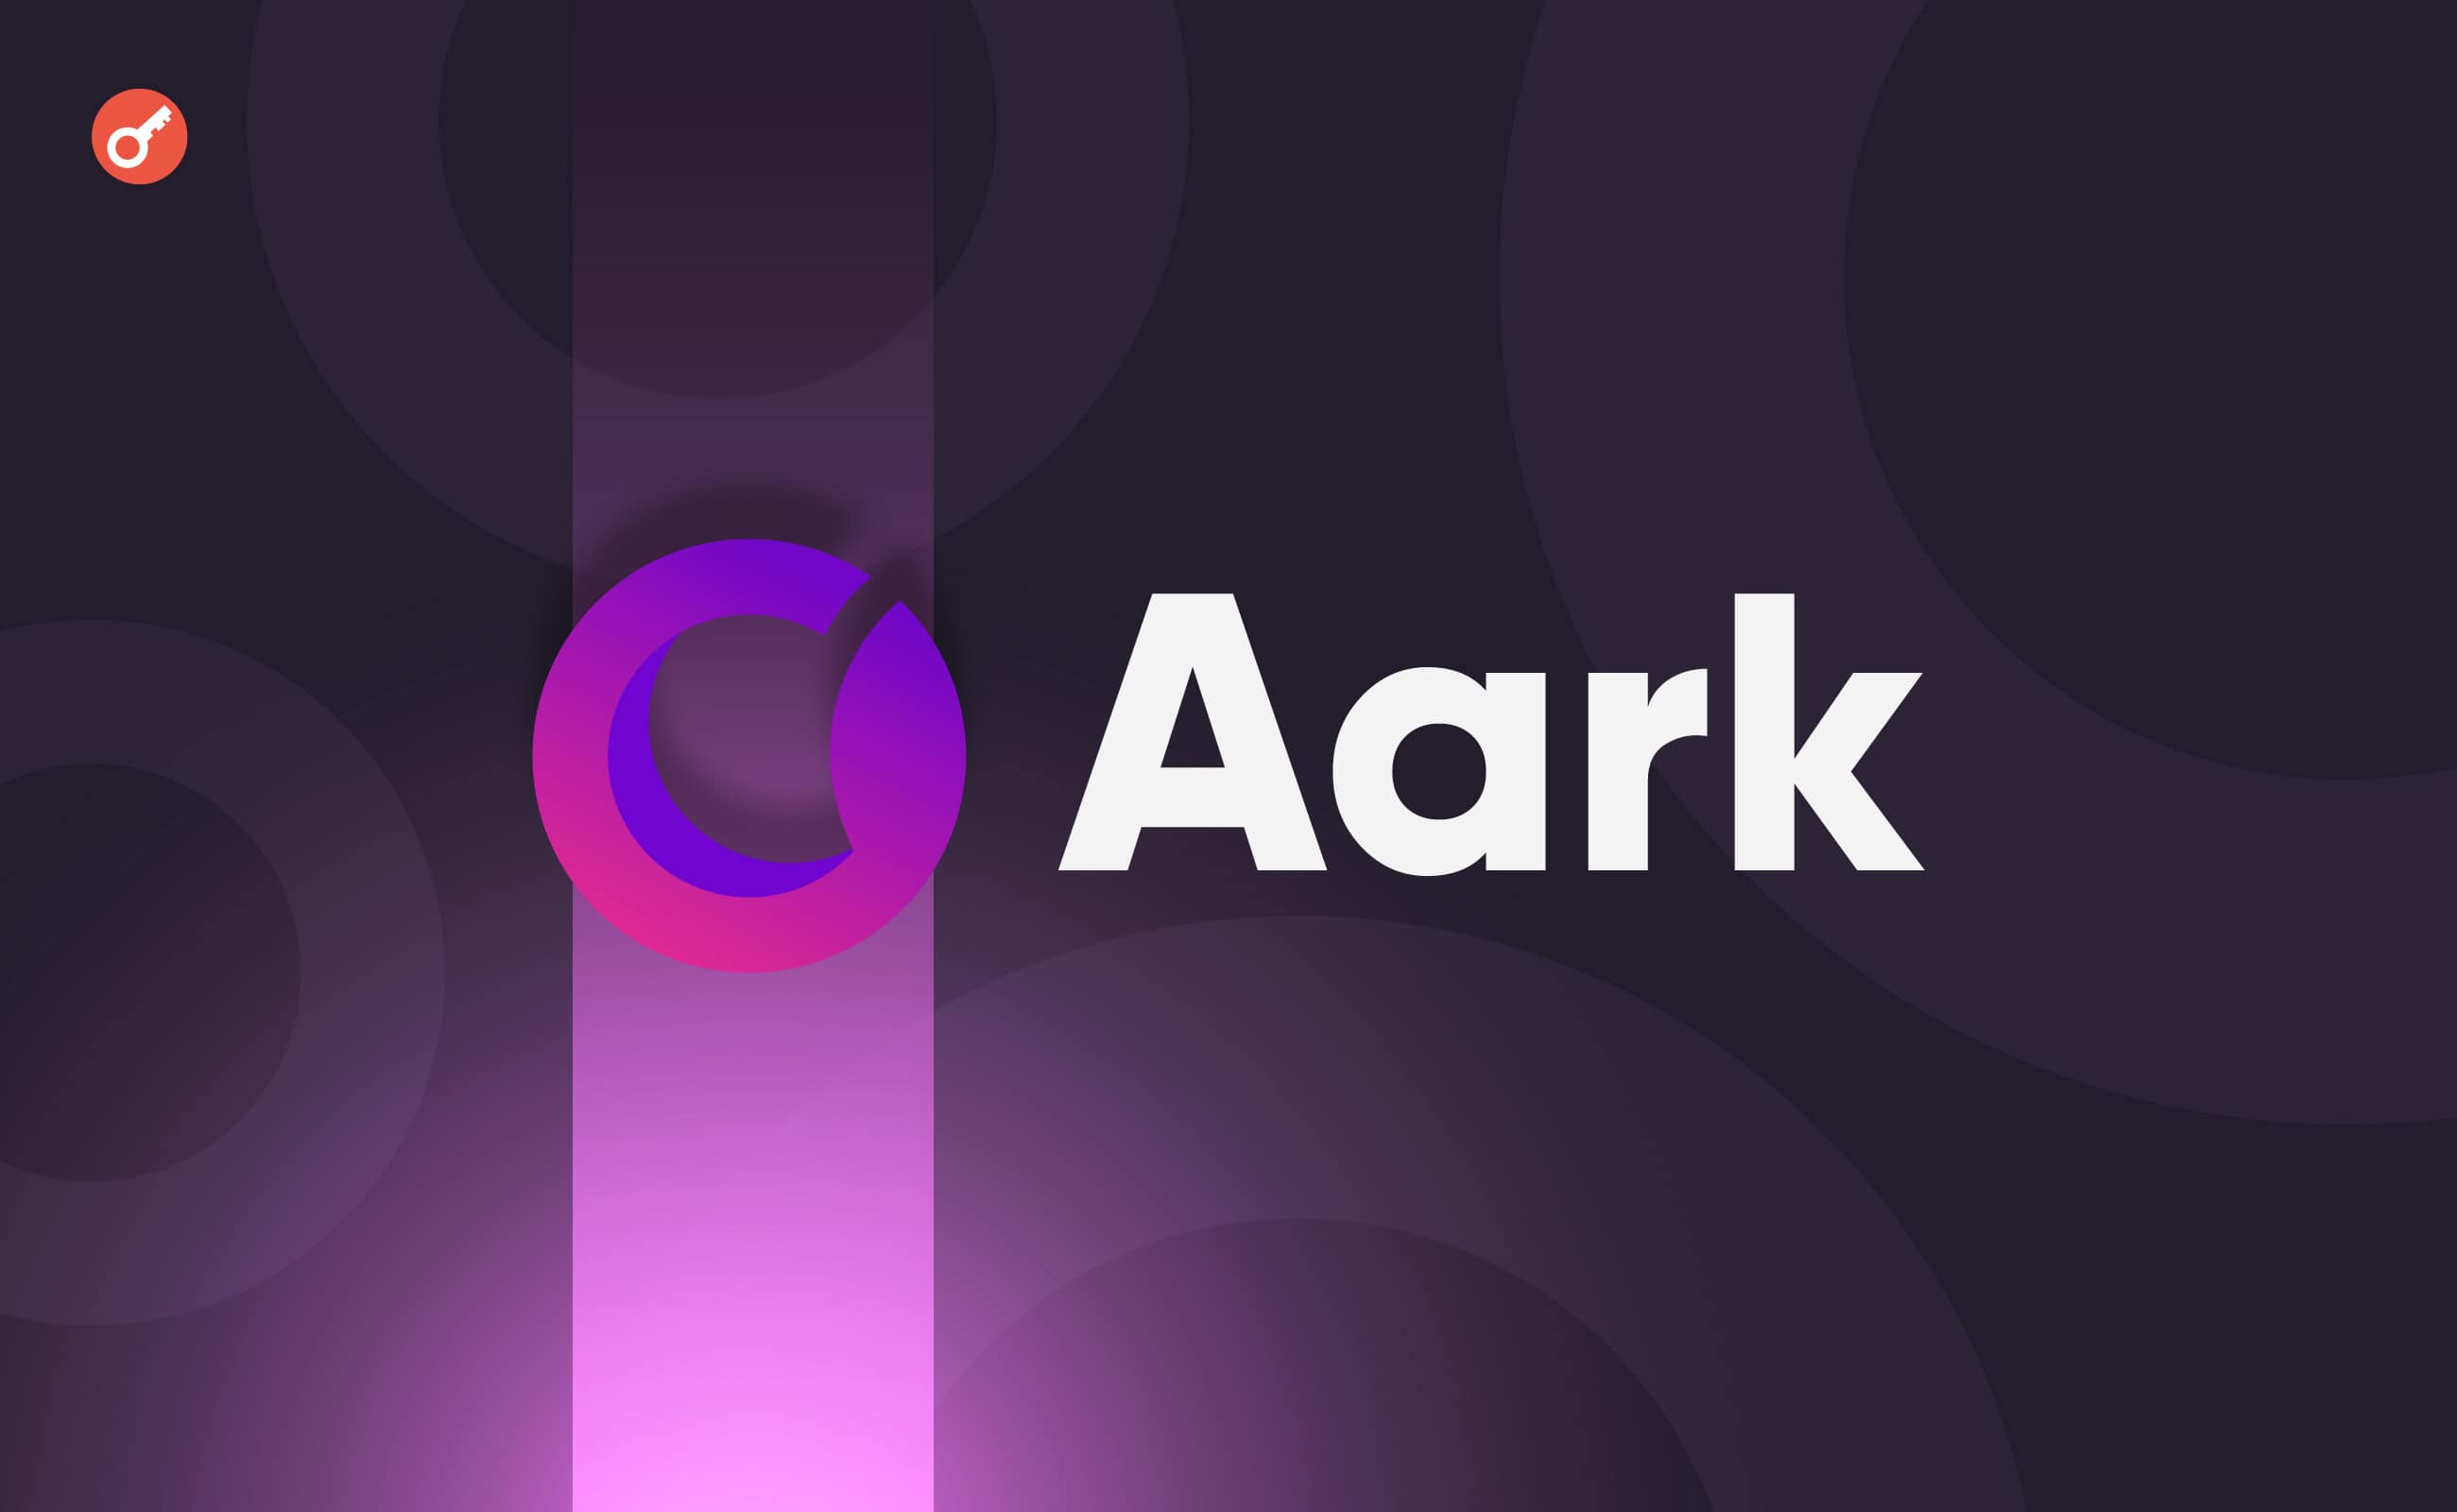 Децентралізована біржа Aark Digital залучила $6 млн за участю HashKey Capital. Головний колаж новини.